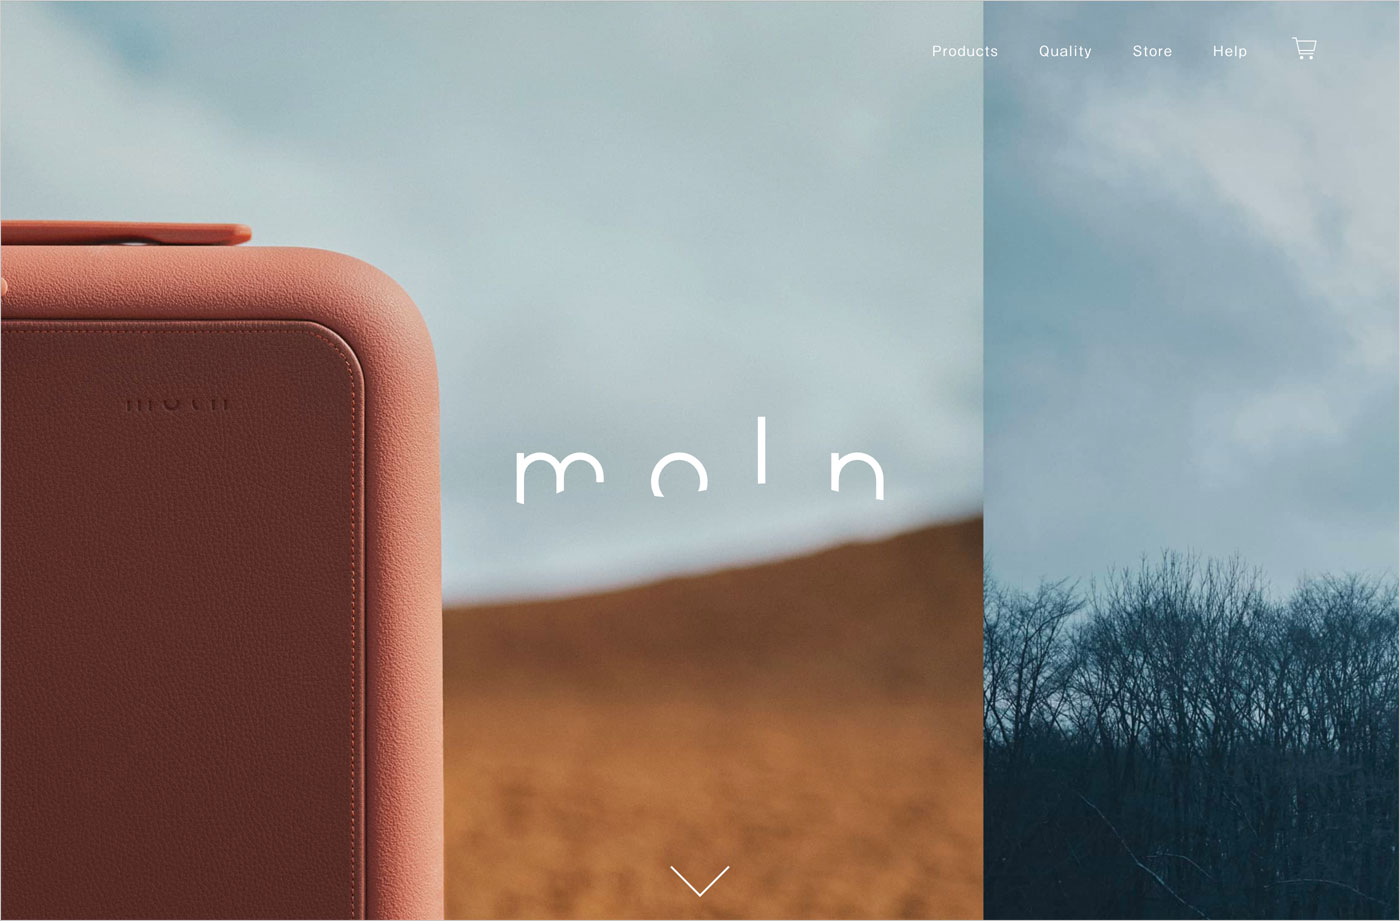 moln | 鞄のようなスーツケースウェブサイトの画面キャプチャ画像